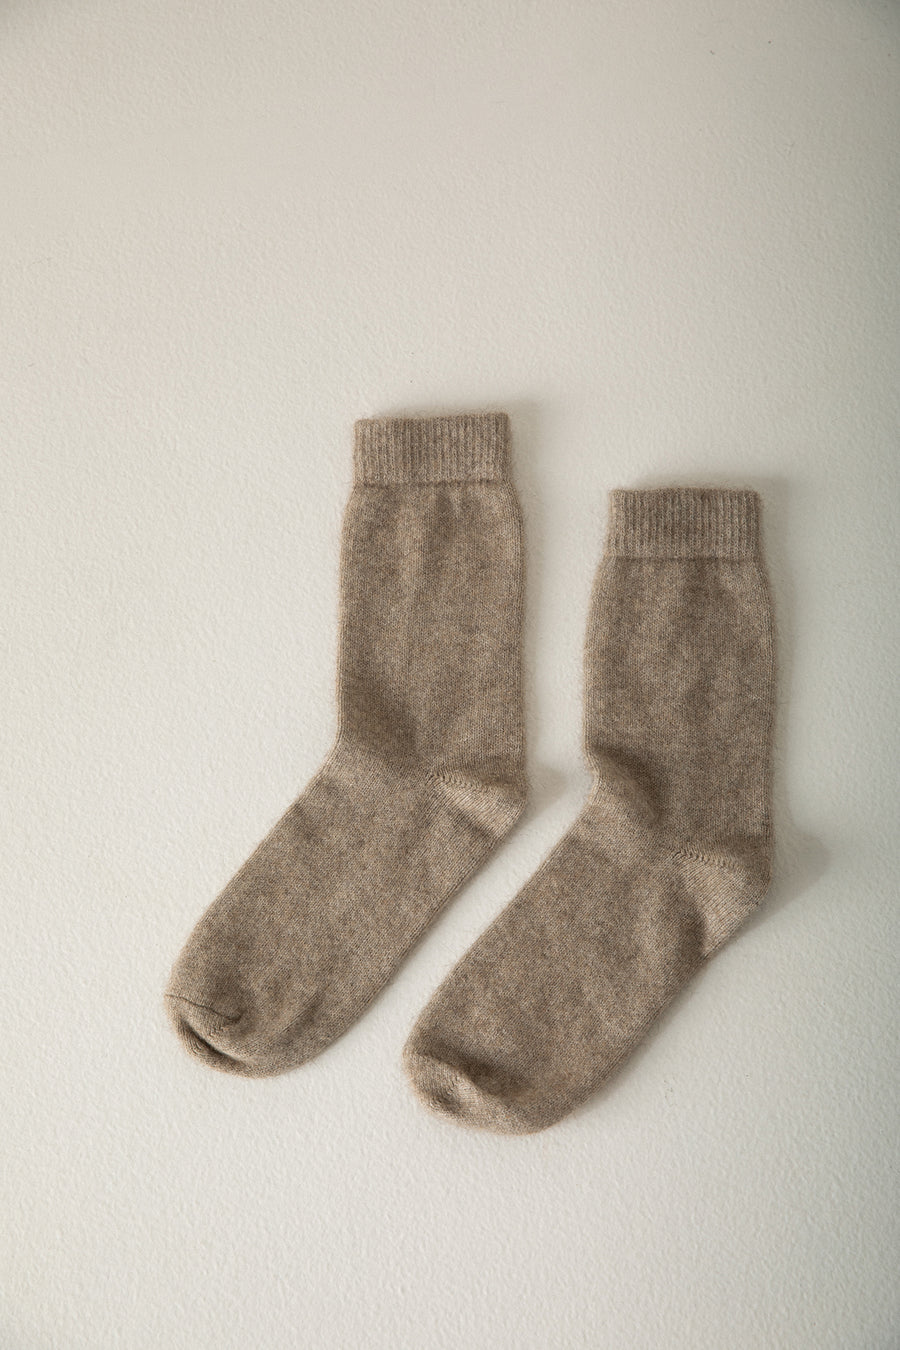 Possum Merino Socks - Natural